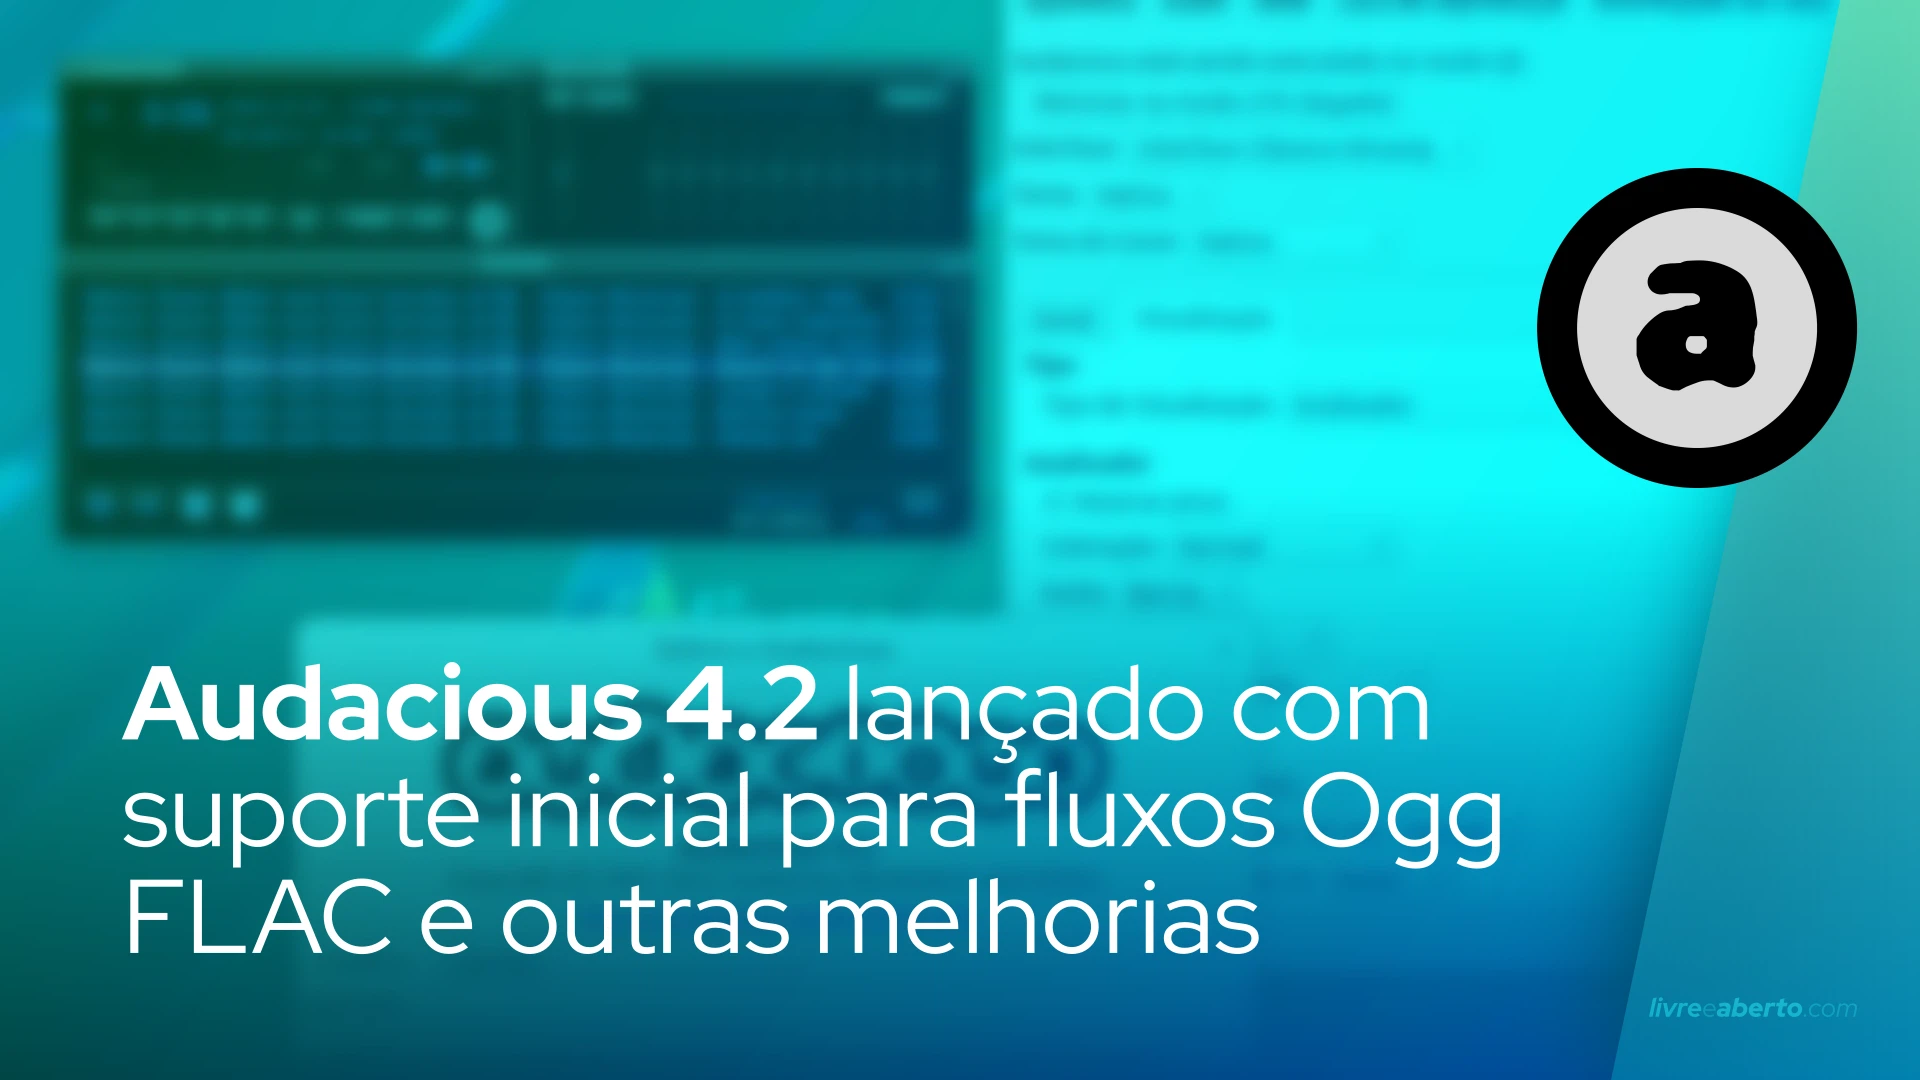 Audacious 4.2 adiciona suporte inicial para fluxos Ogg FLAC, aprimoramentos da interface Winamp